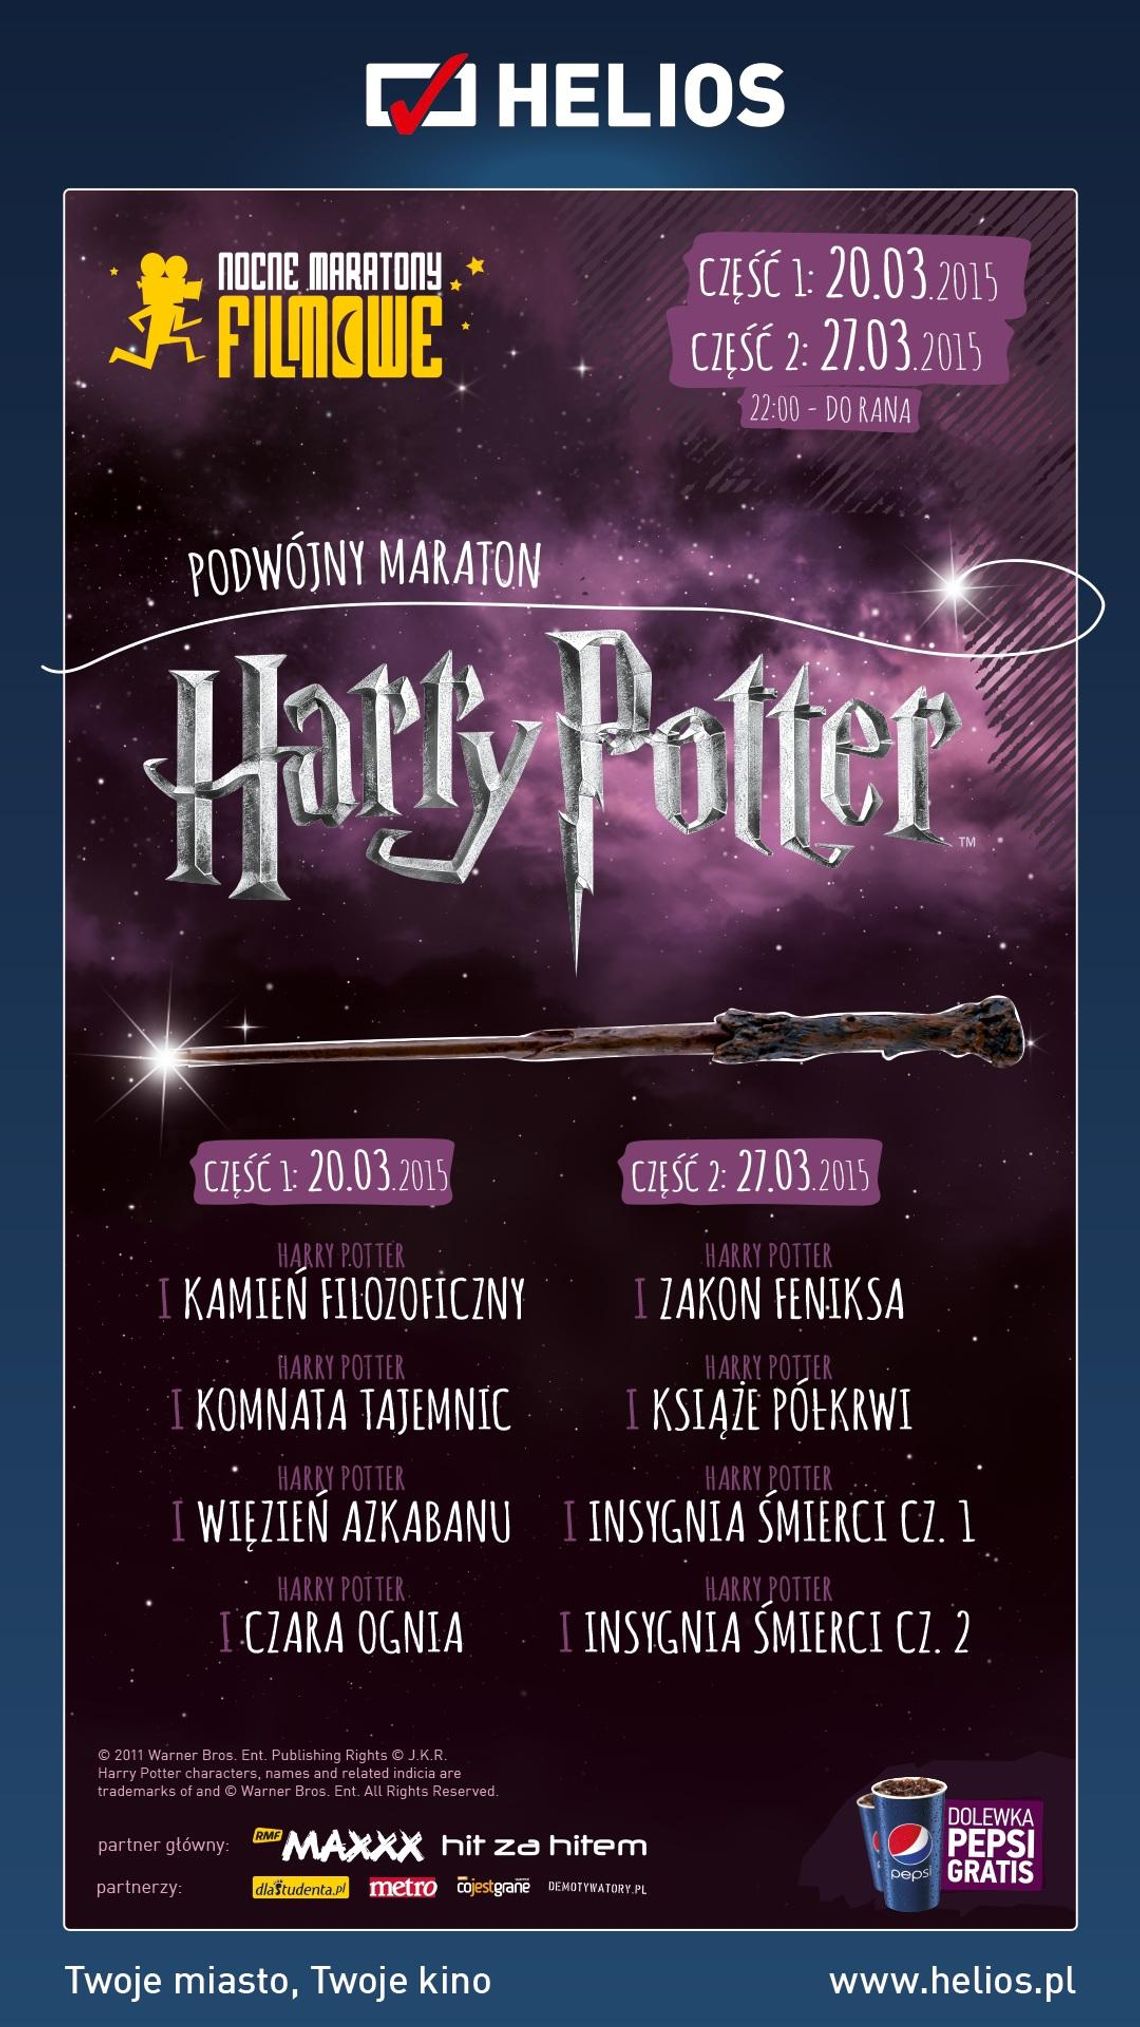 Nocne spotkanie z Harrym Potterem w kinie Helios. Przed nami druga część maratonu